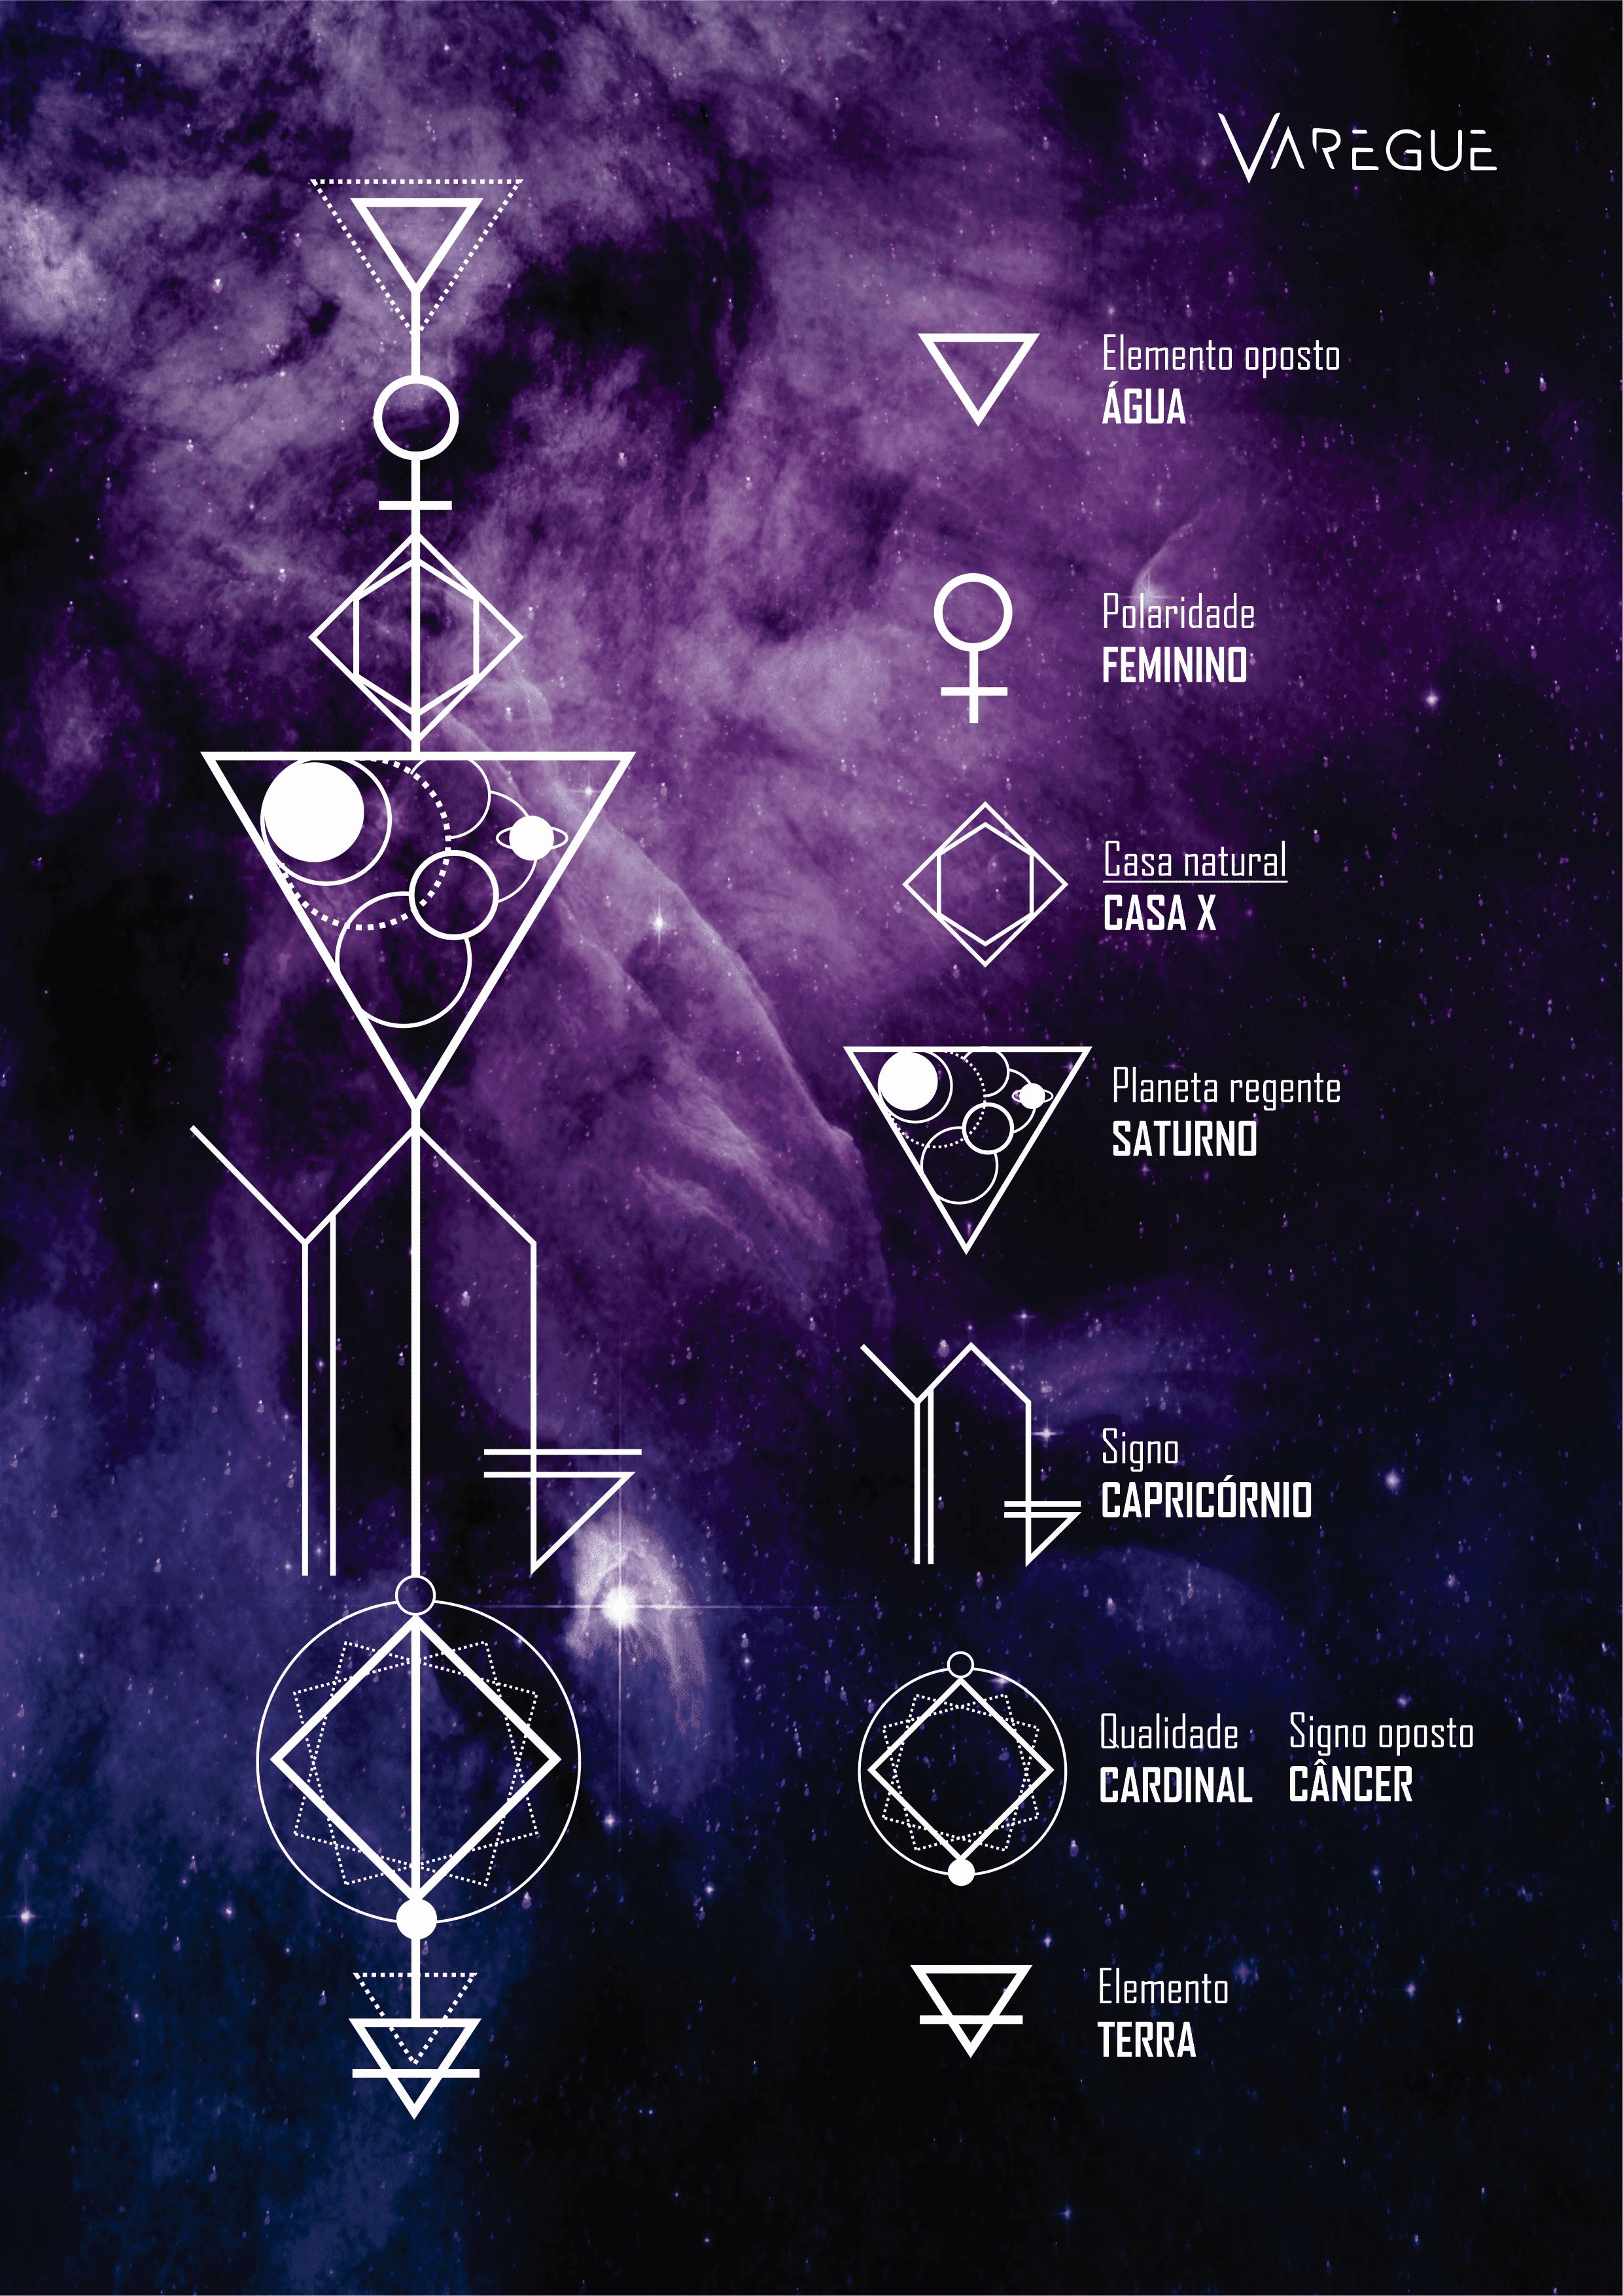 Tabela com data de todos os signos com seu planeta regente.